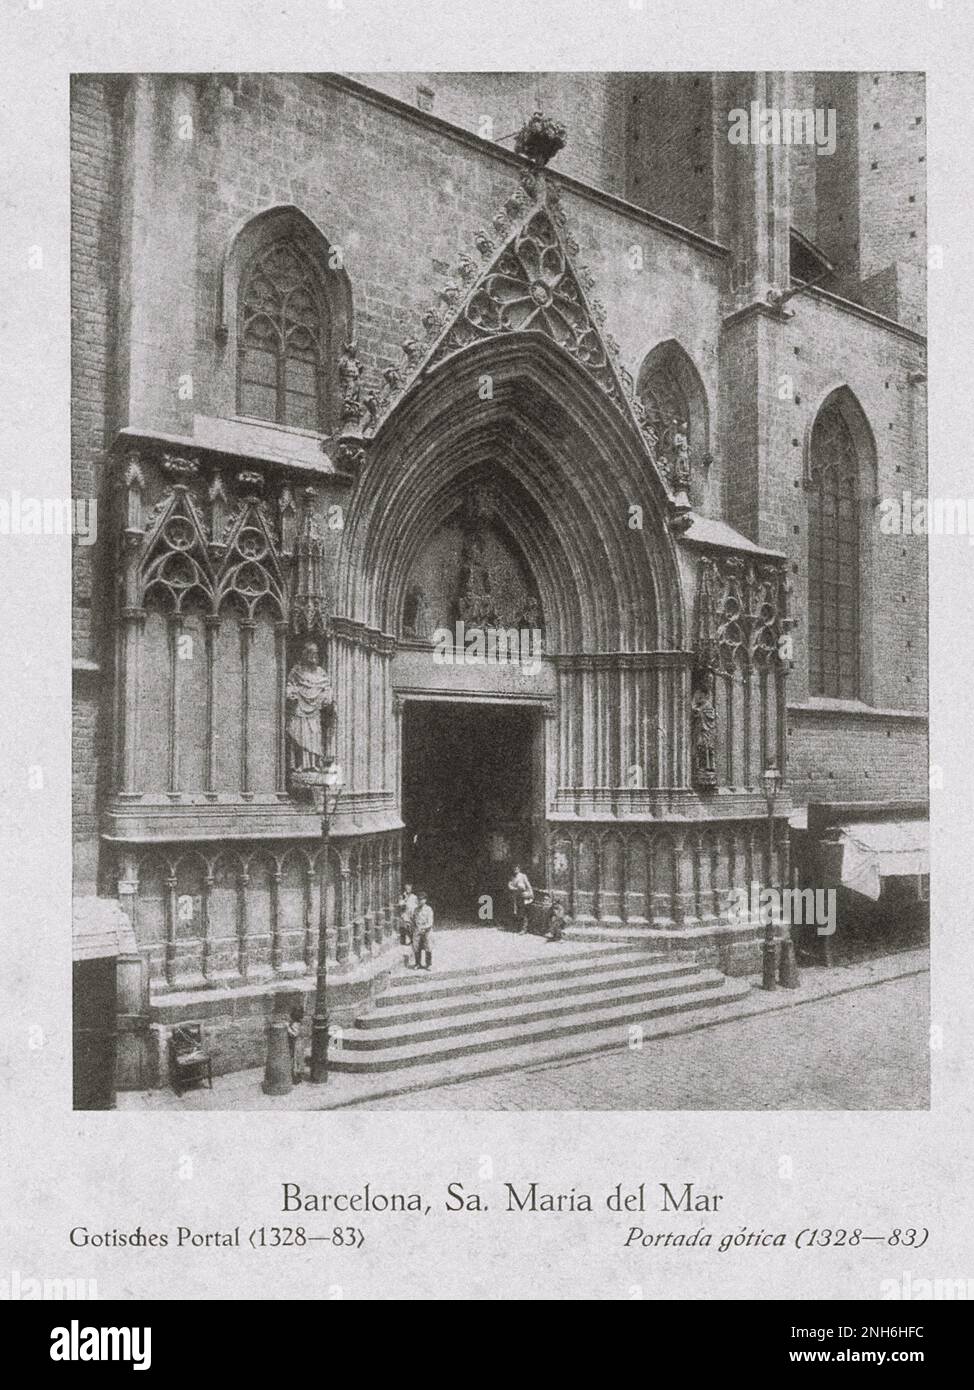 Architecture de la vieille Espagne. Photo d'époque de Santa Maria del Mar, Barcelone. Portail gothique (1328-1383) Banque D'Images